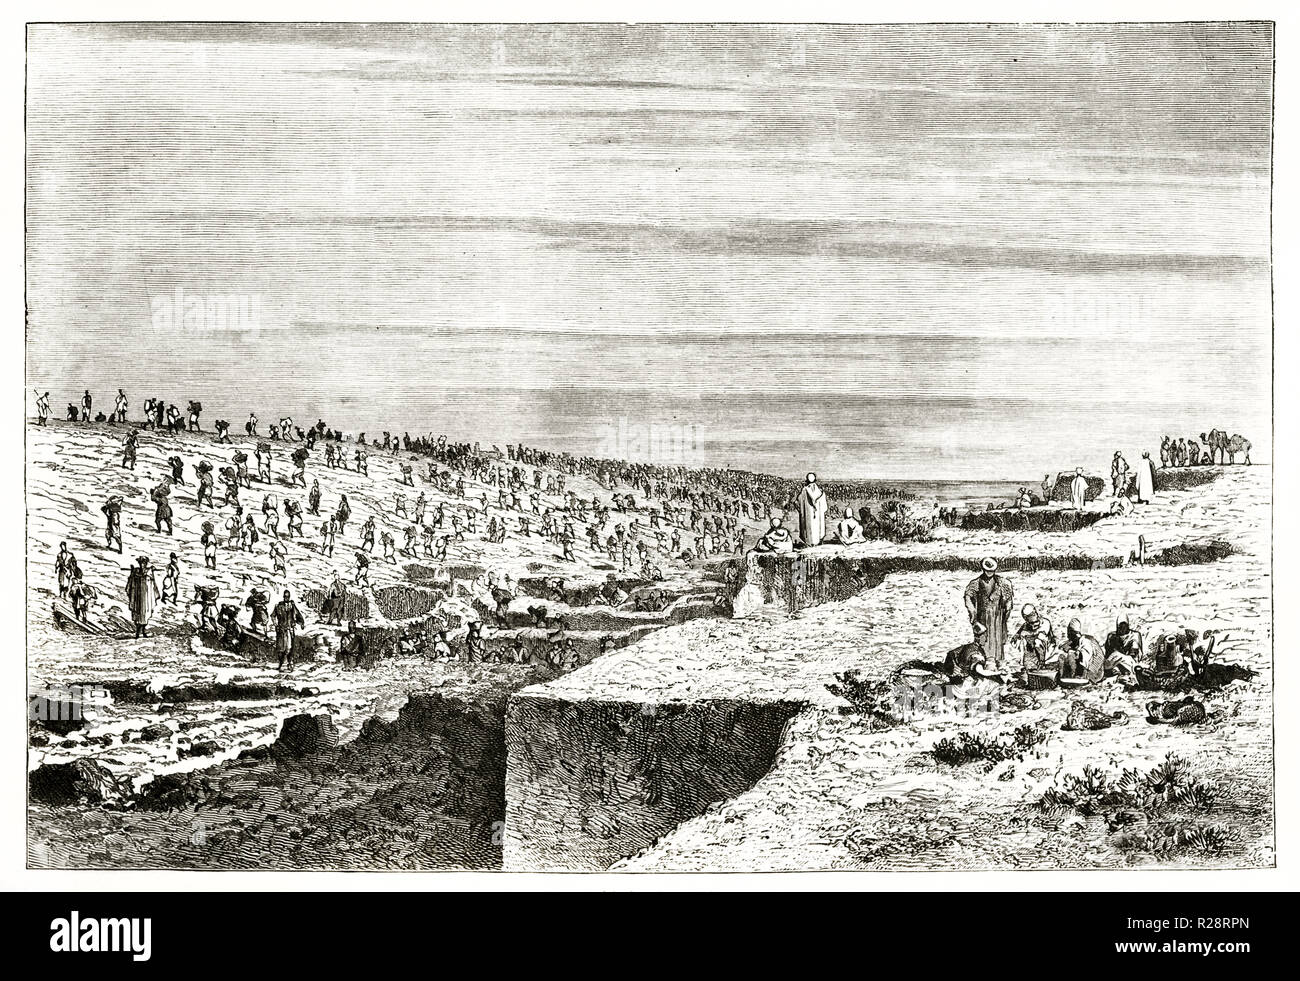 Old illustration of excavation work of Suez Canal. By Grenet, publ. on le Tour du Monde, Paris, 1863 Stock Photo